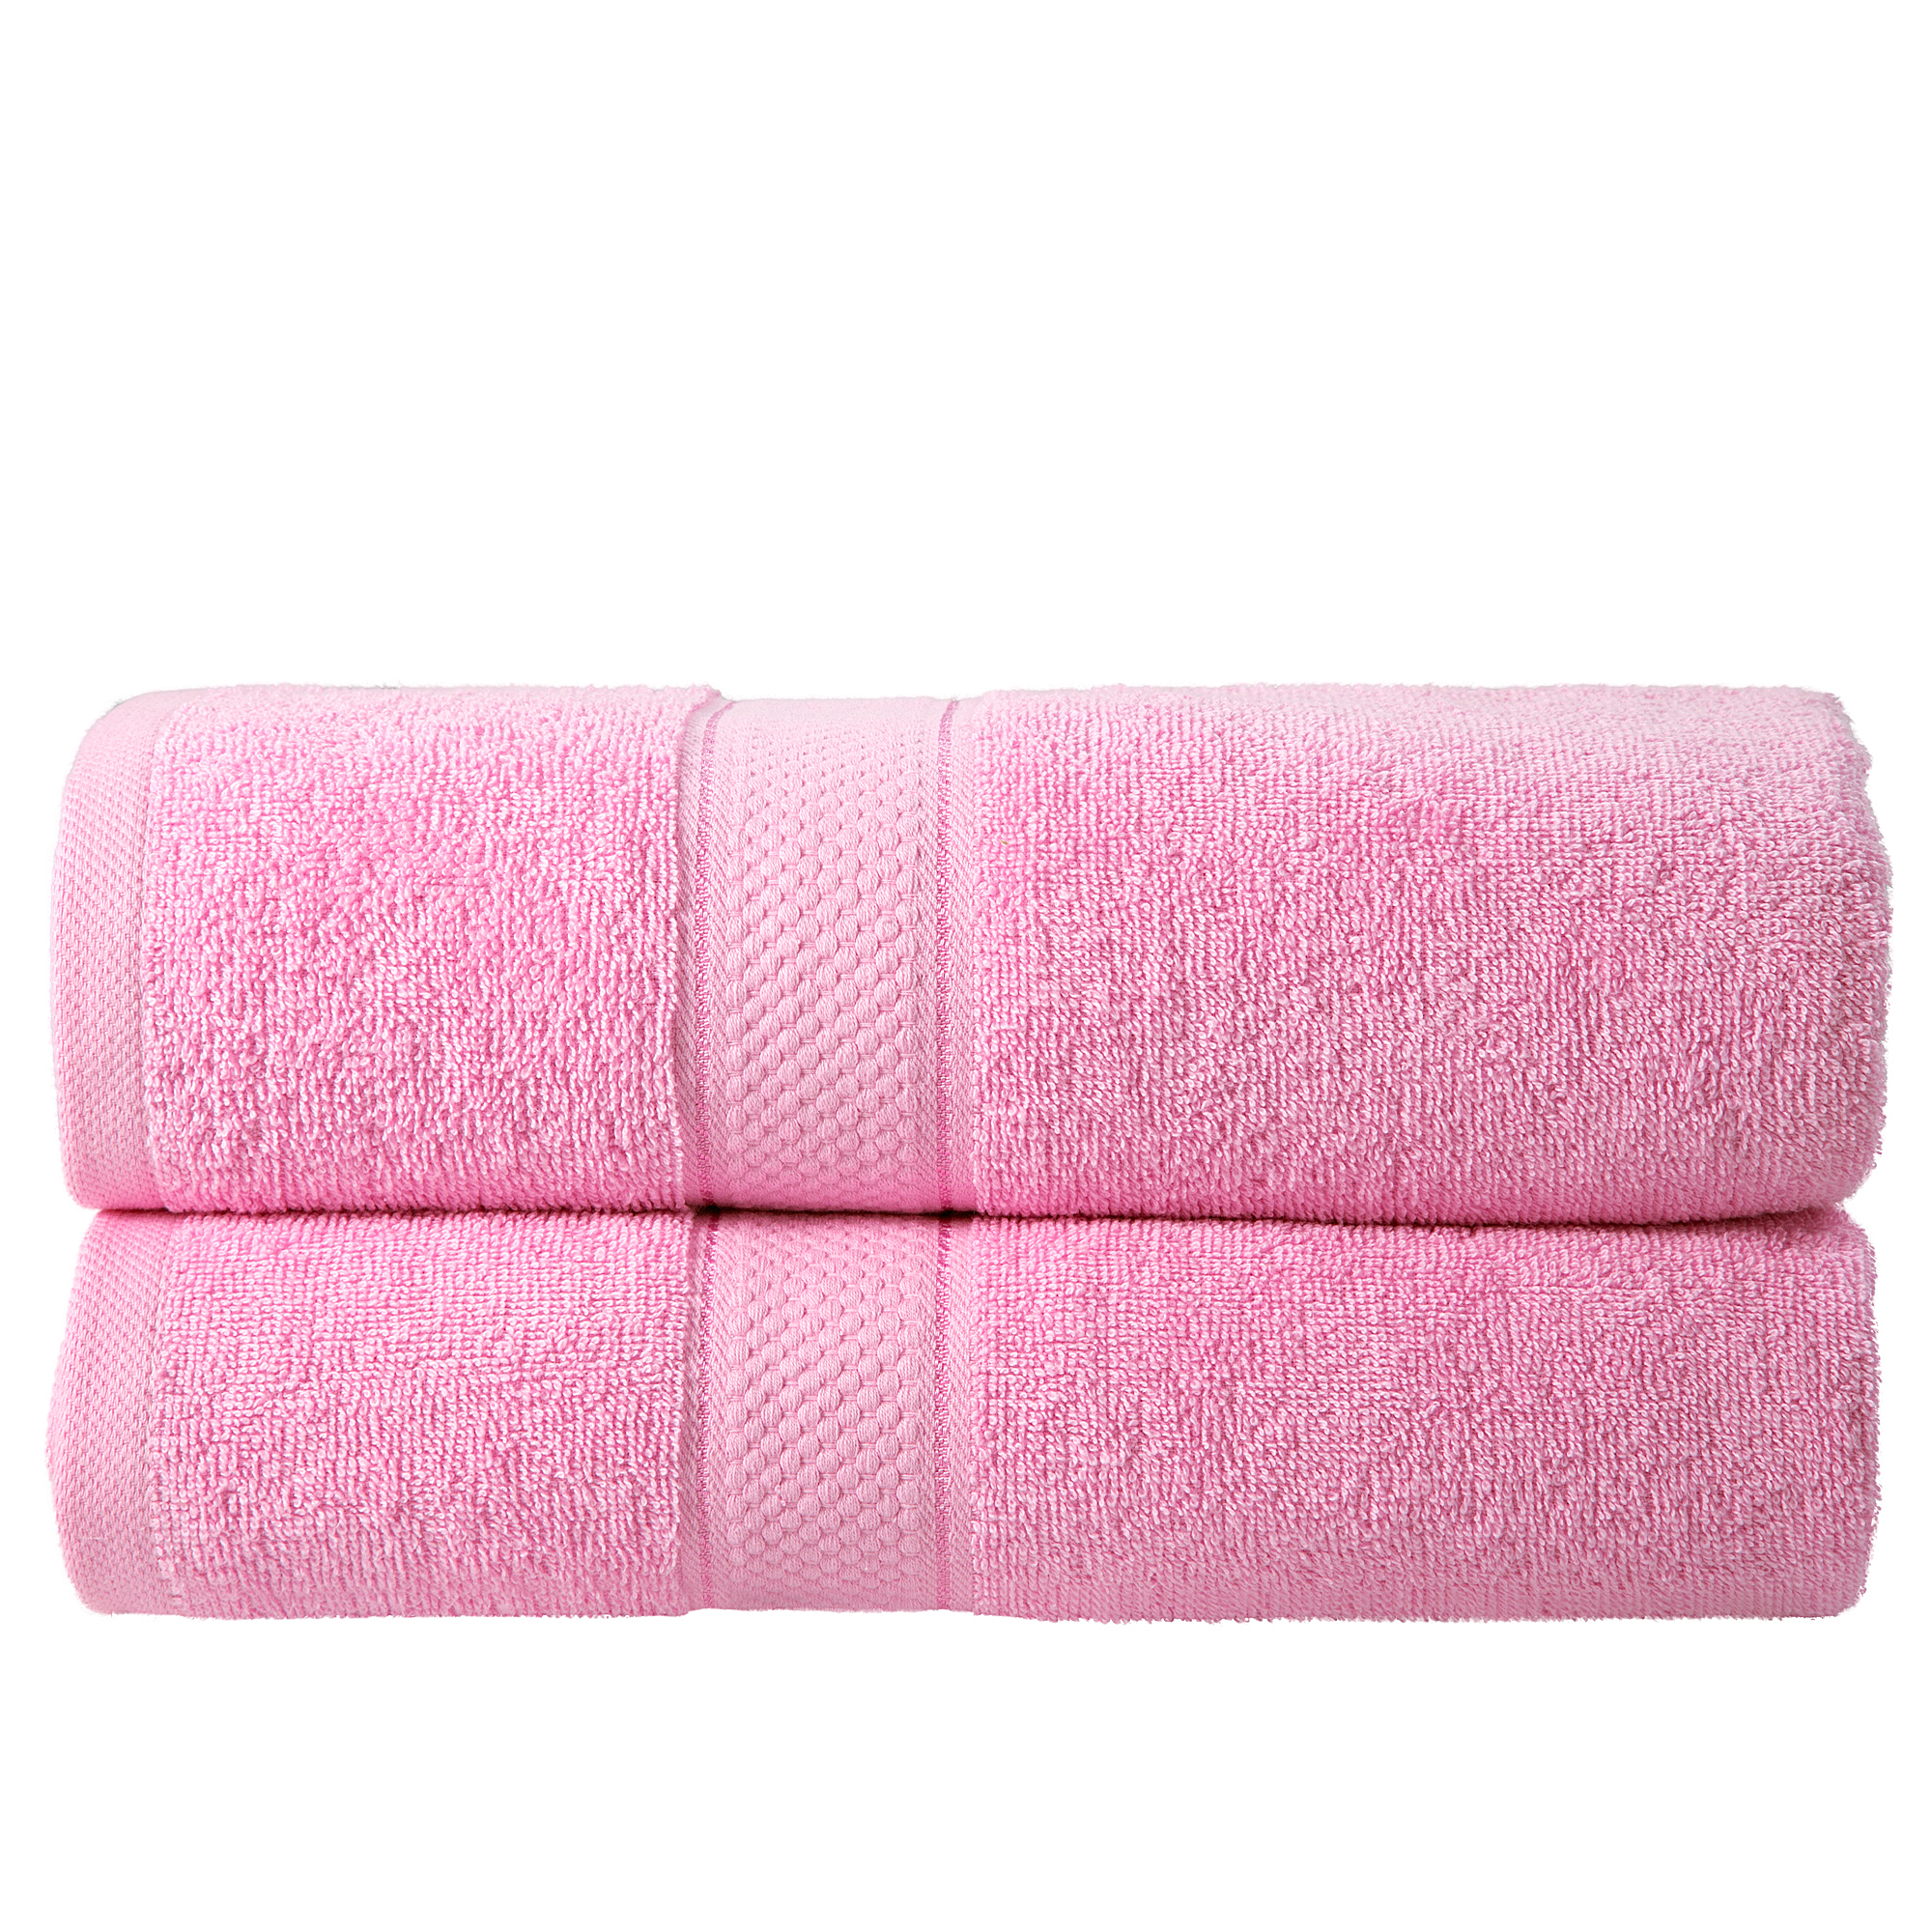 2 Pcs 100 % Cotton Premium Bath Sheet Towel Bale Set Blush Pink Plain